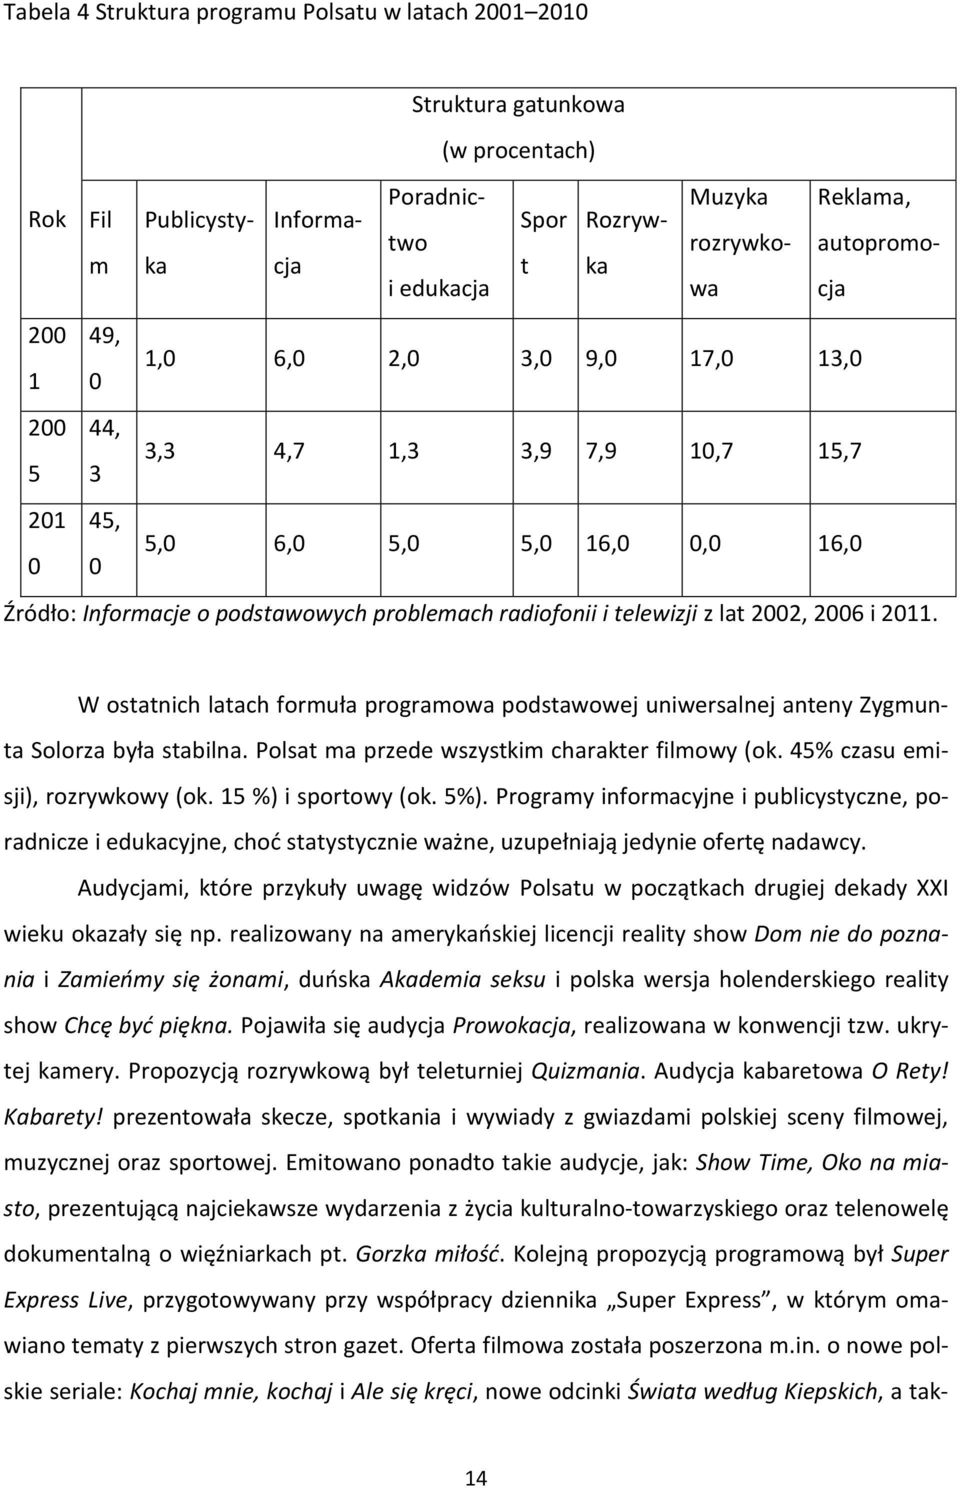 telewizji z lat 2002, 2006 i 2011. W ostatnich latach formuła programowa podstawowej uniwersalnej anteny Zygmunta Solorza była stabilna. Polsat ma przede wszystkim charakter filmowy (ok.